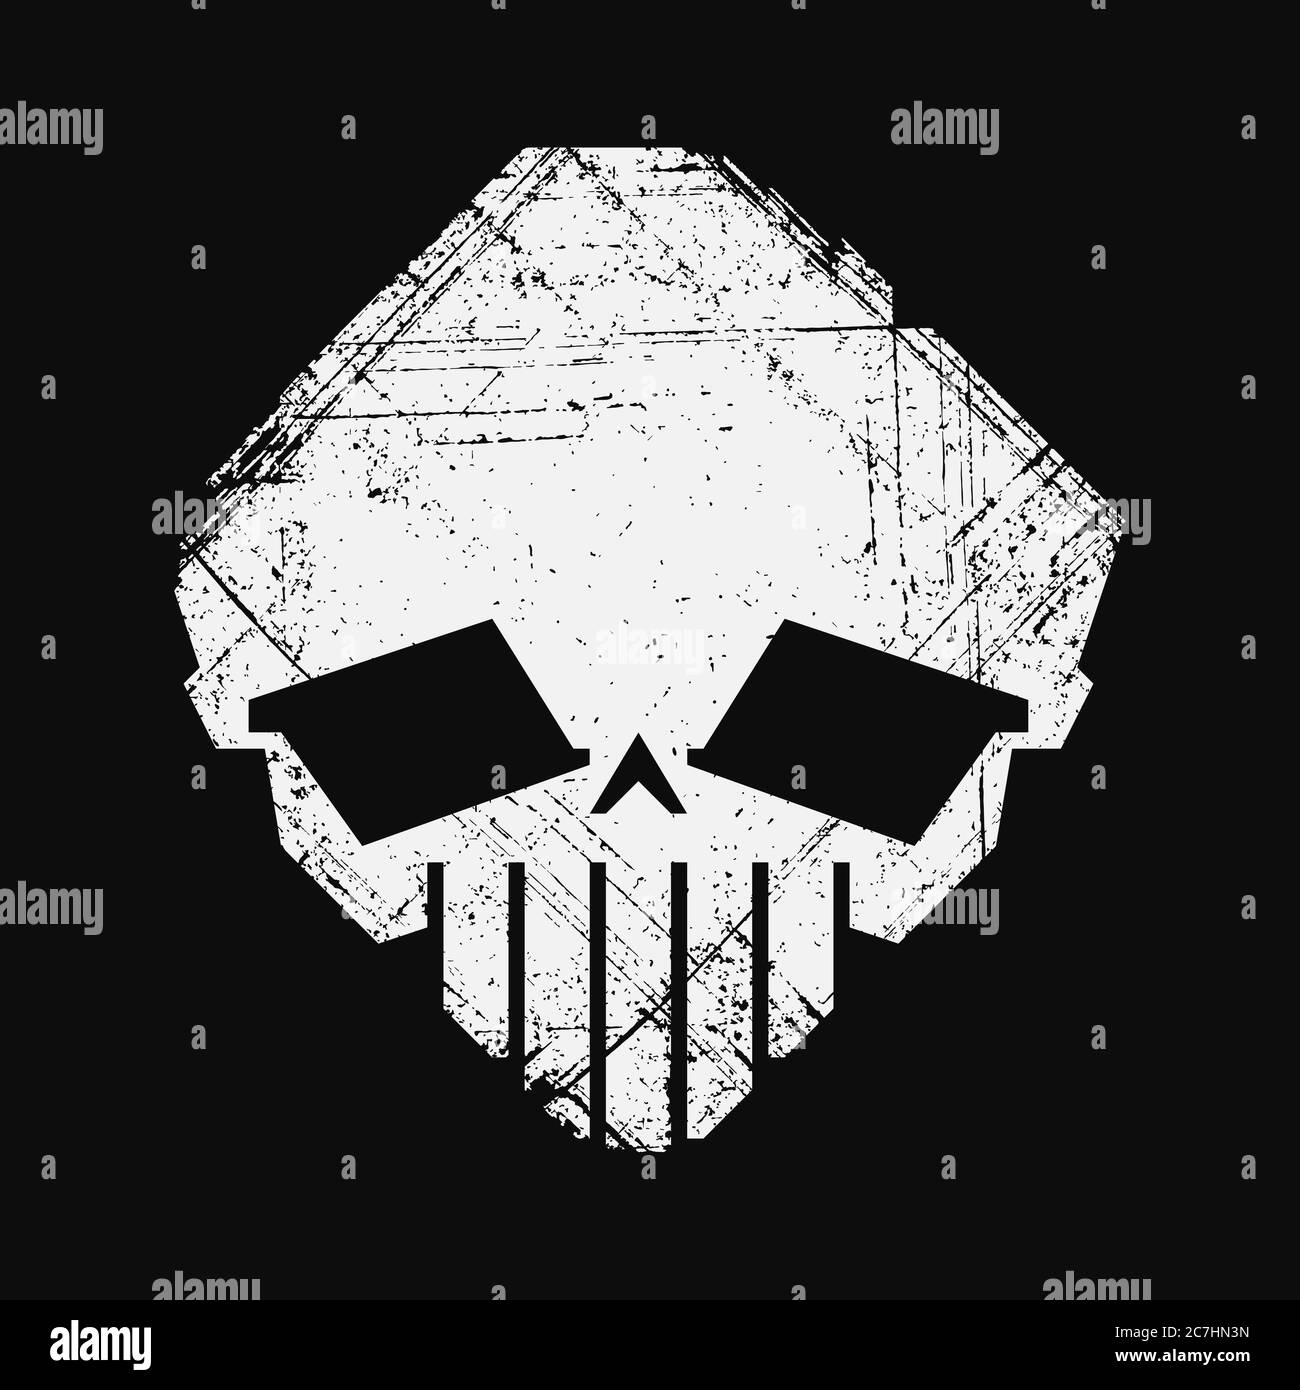 Skull of alien. Black and white textured imprint. Stock Vector